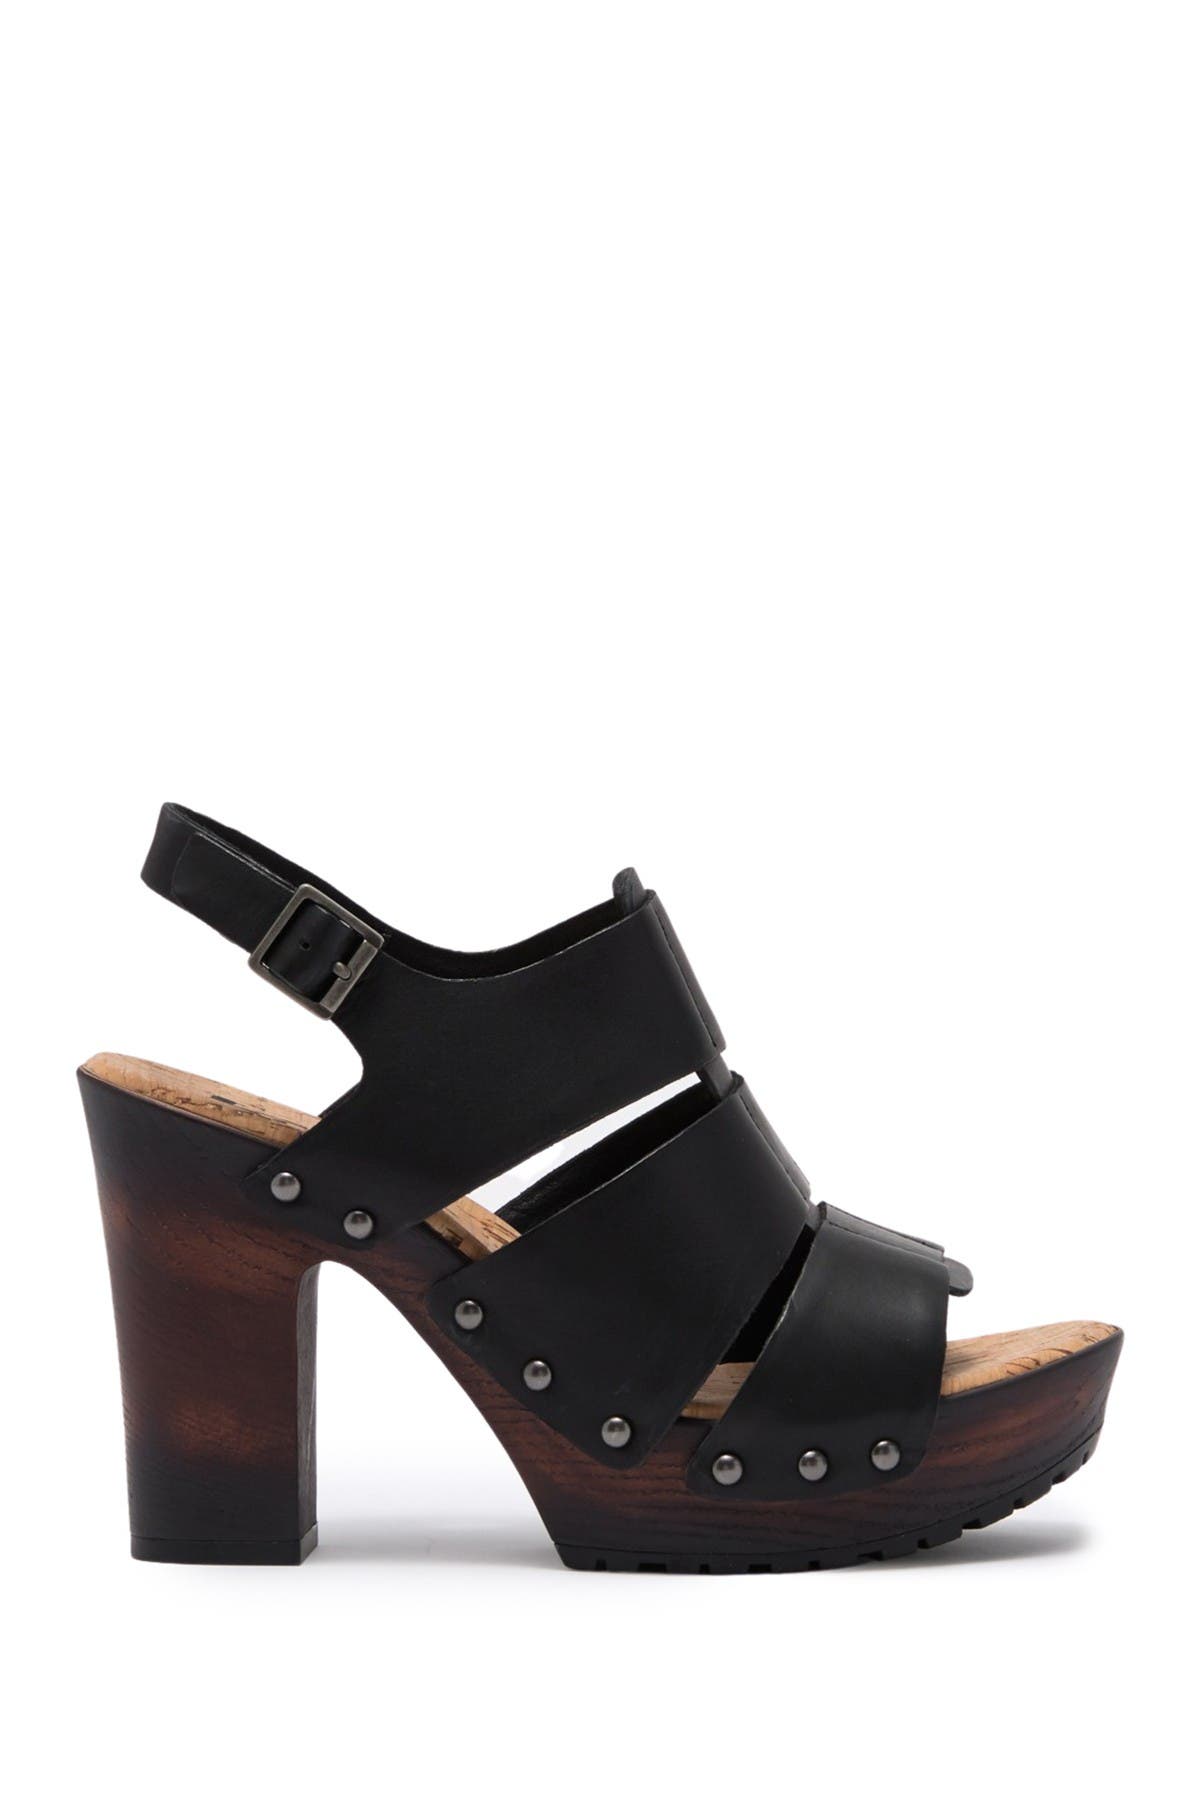 KORKS | Selyse Platform Leather Sandal | Nordstrom Rack